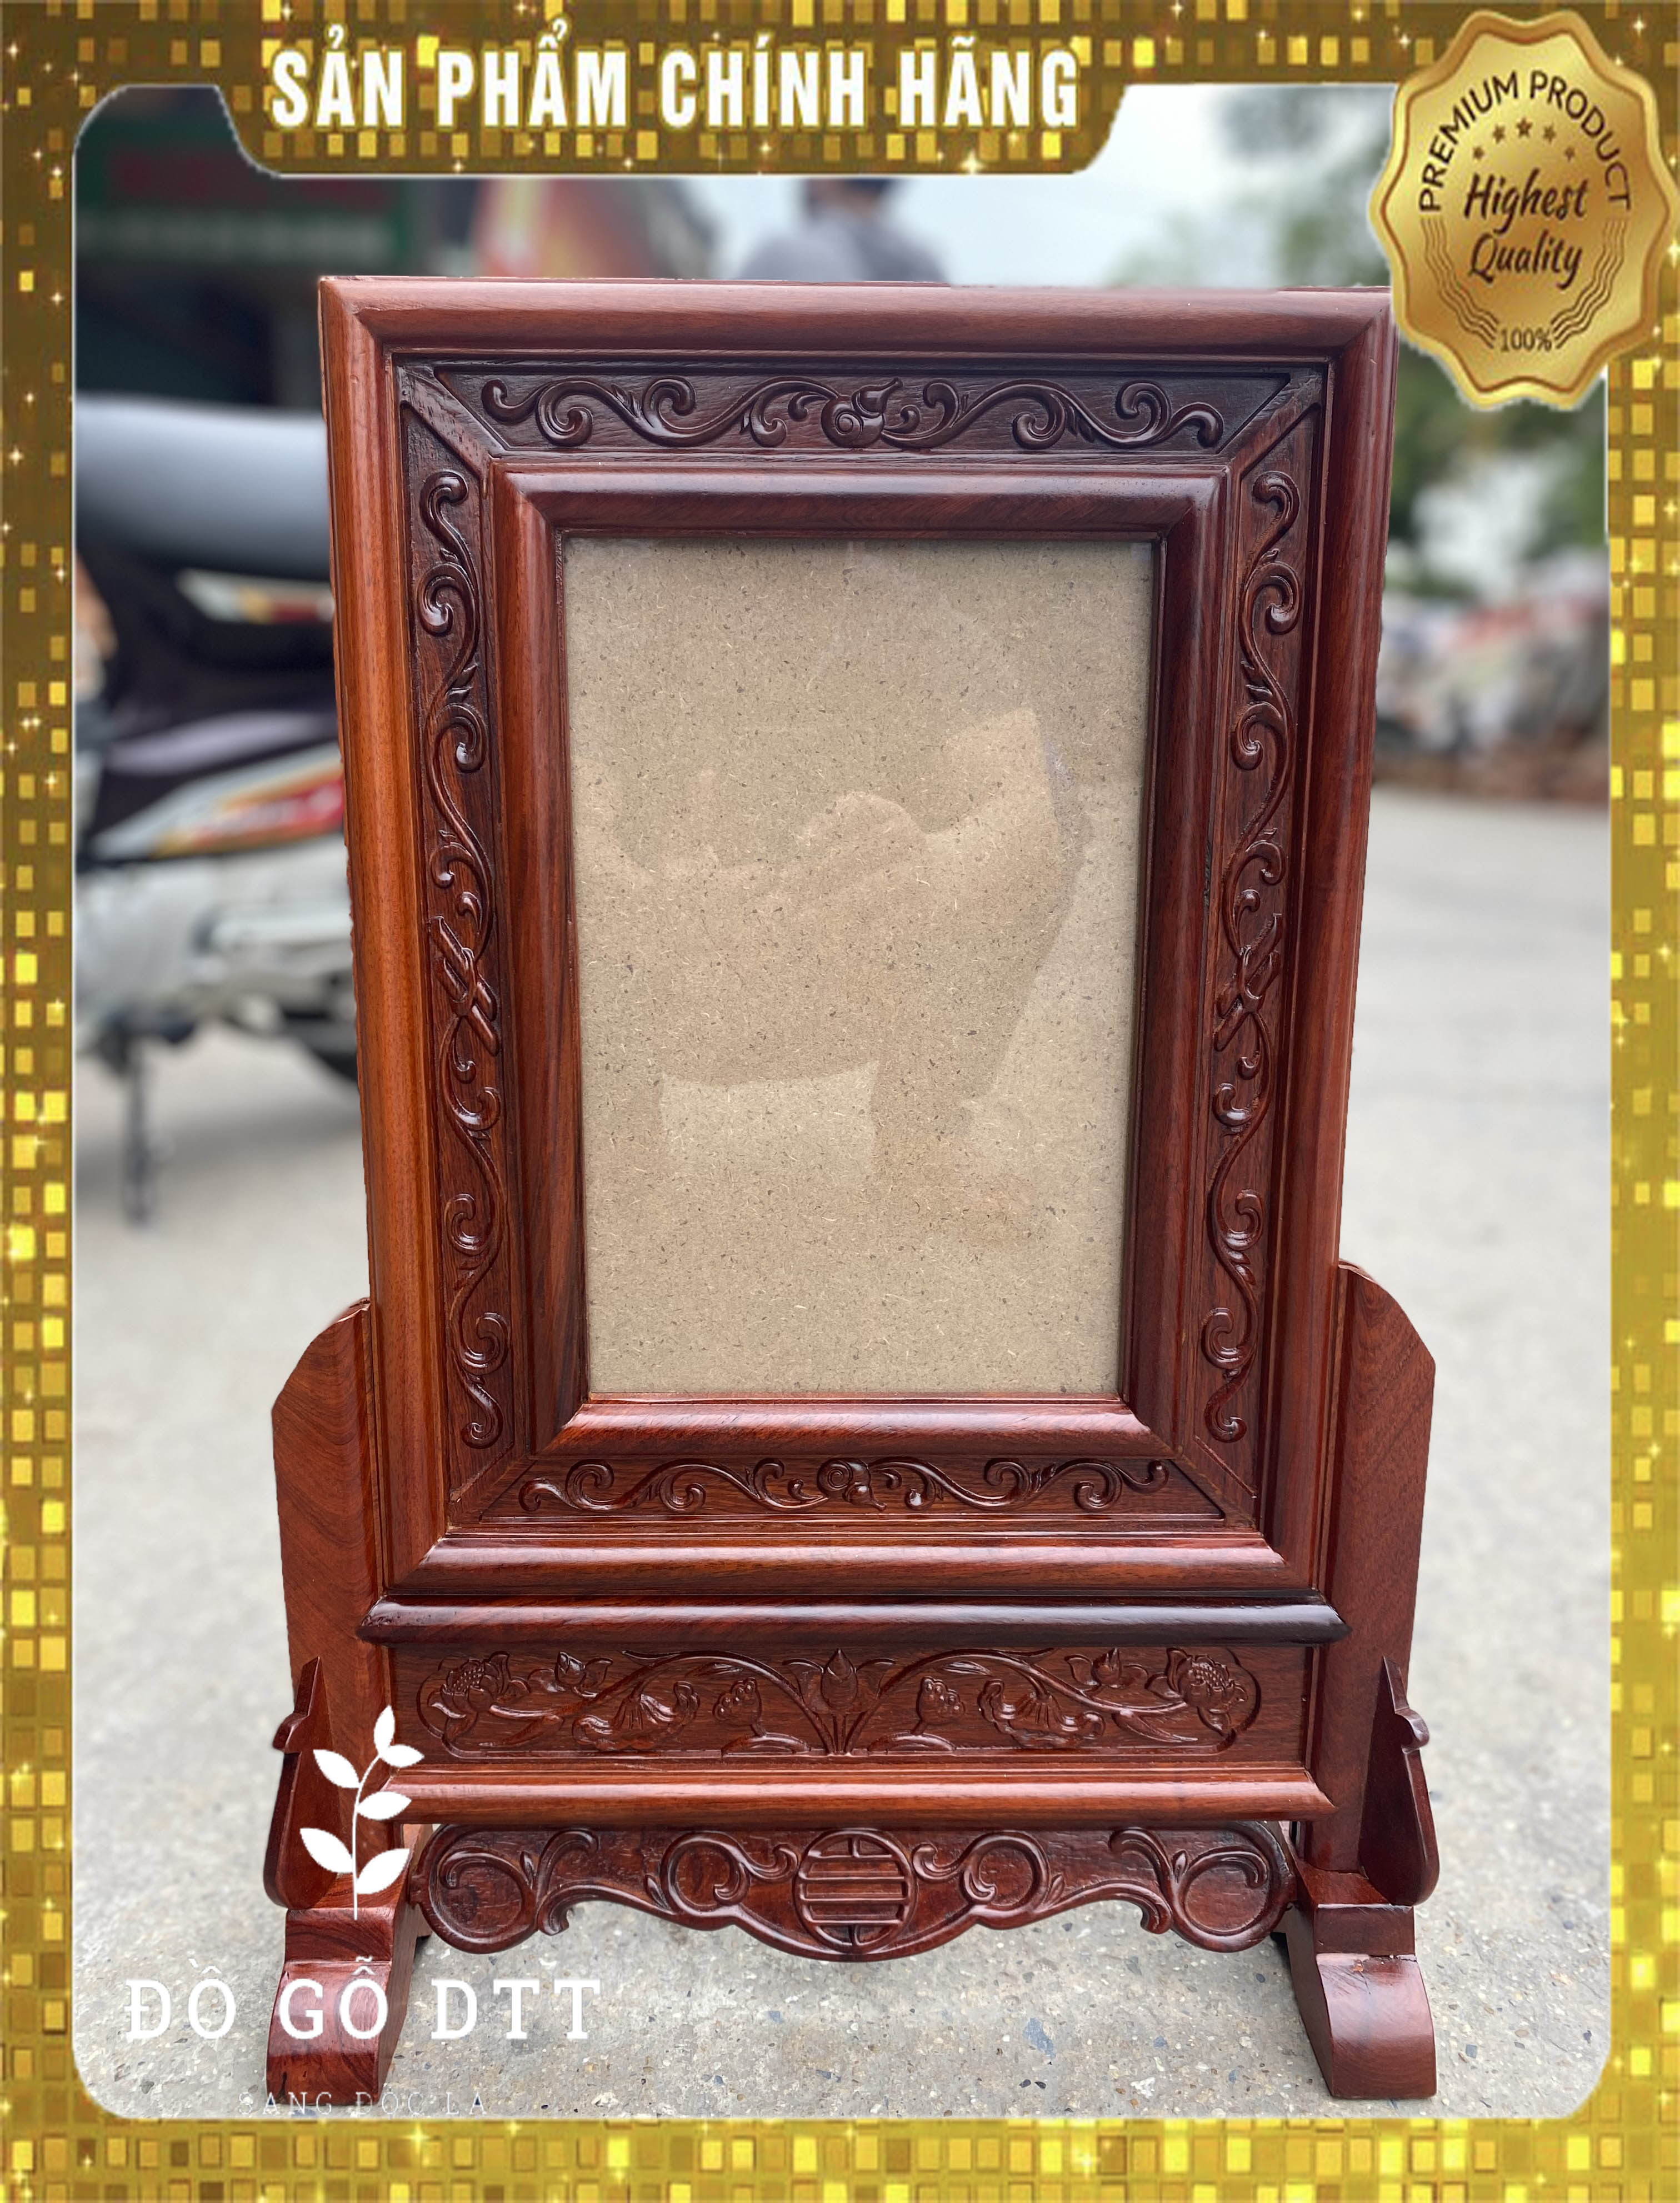 Thư giãn và tâm linh với khung ảnh thờ trạm chiên hoa la tây tại TPHCM. Với chi tiết chạm khắc tinh xảo trên khung gỗ, tạo cho nó một sự nổi bật đậm nét và đẹp mắt.